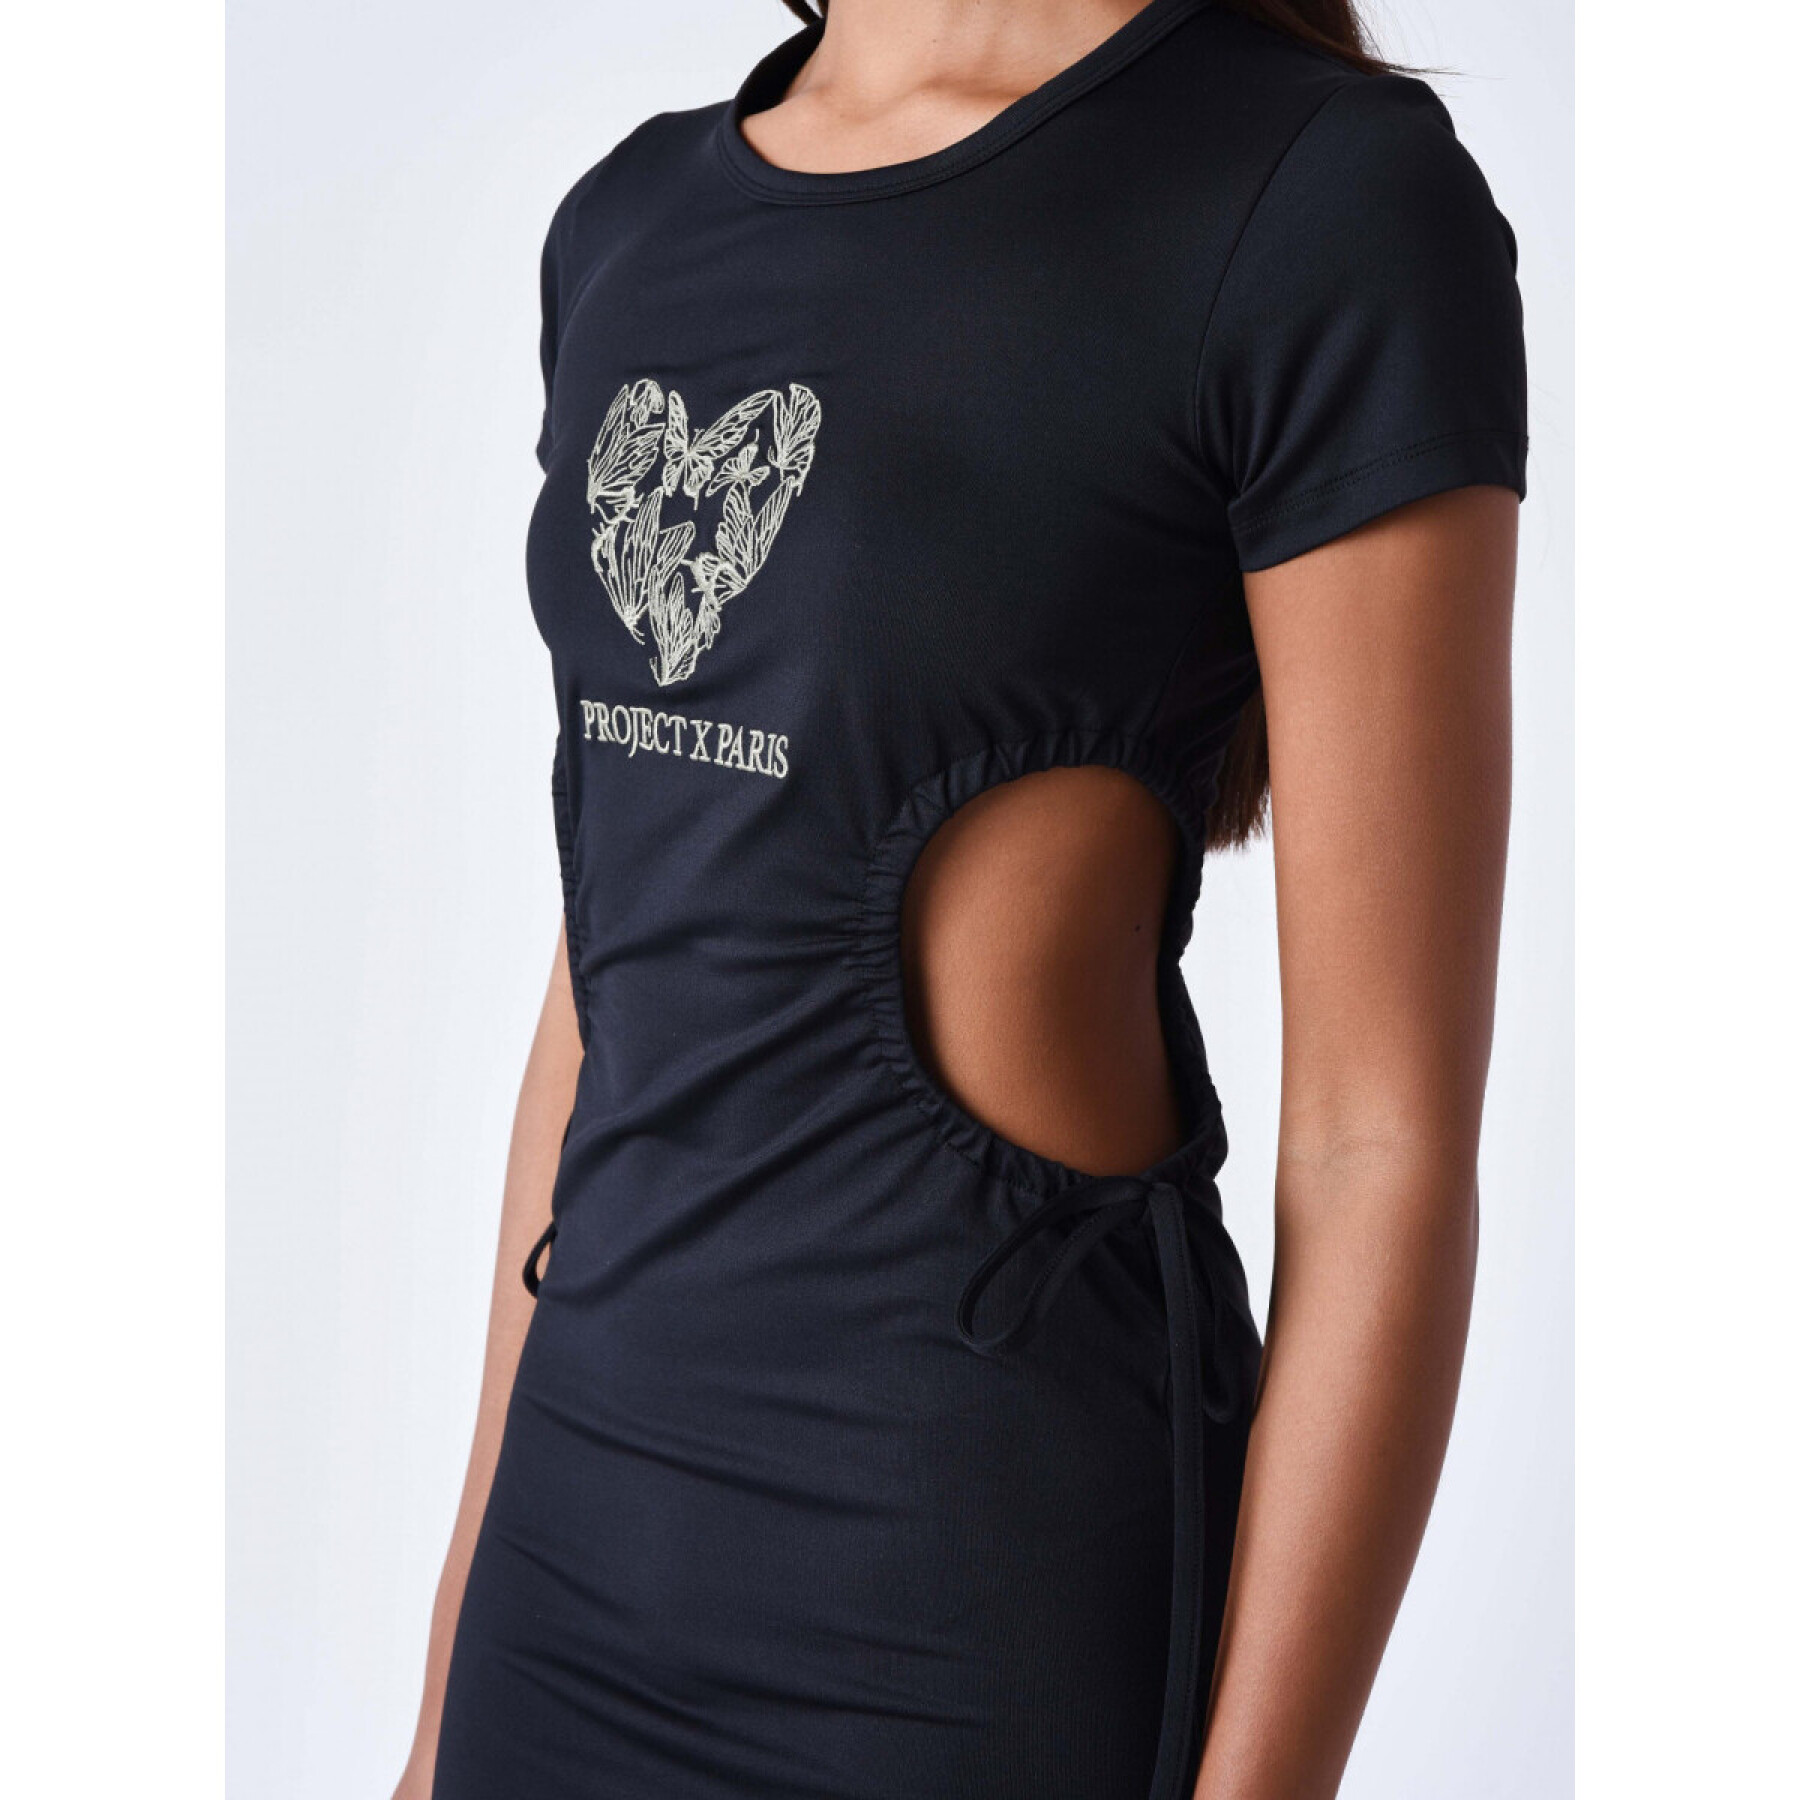 T-shirtjurk met vlinder voor dames Project X Paris